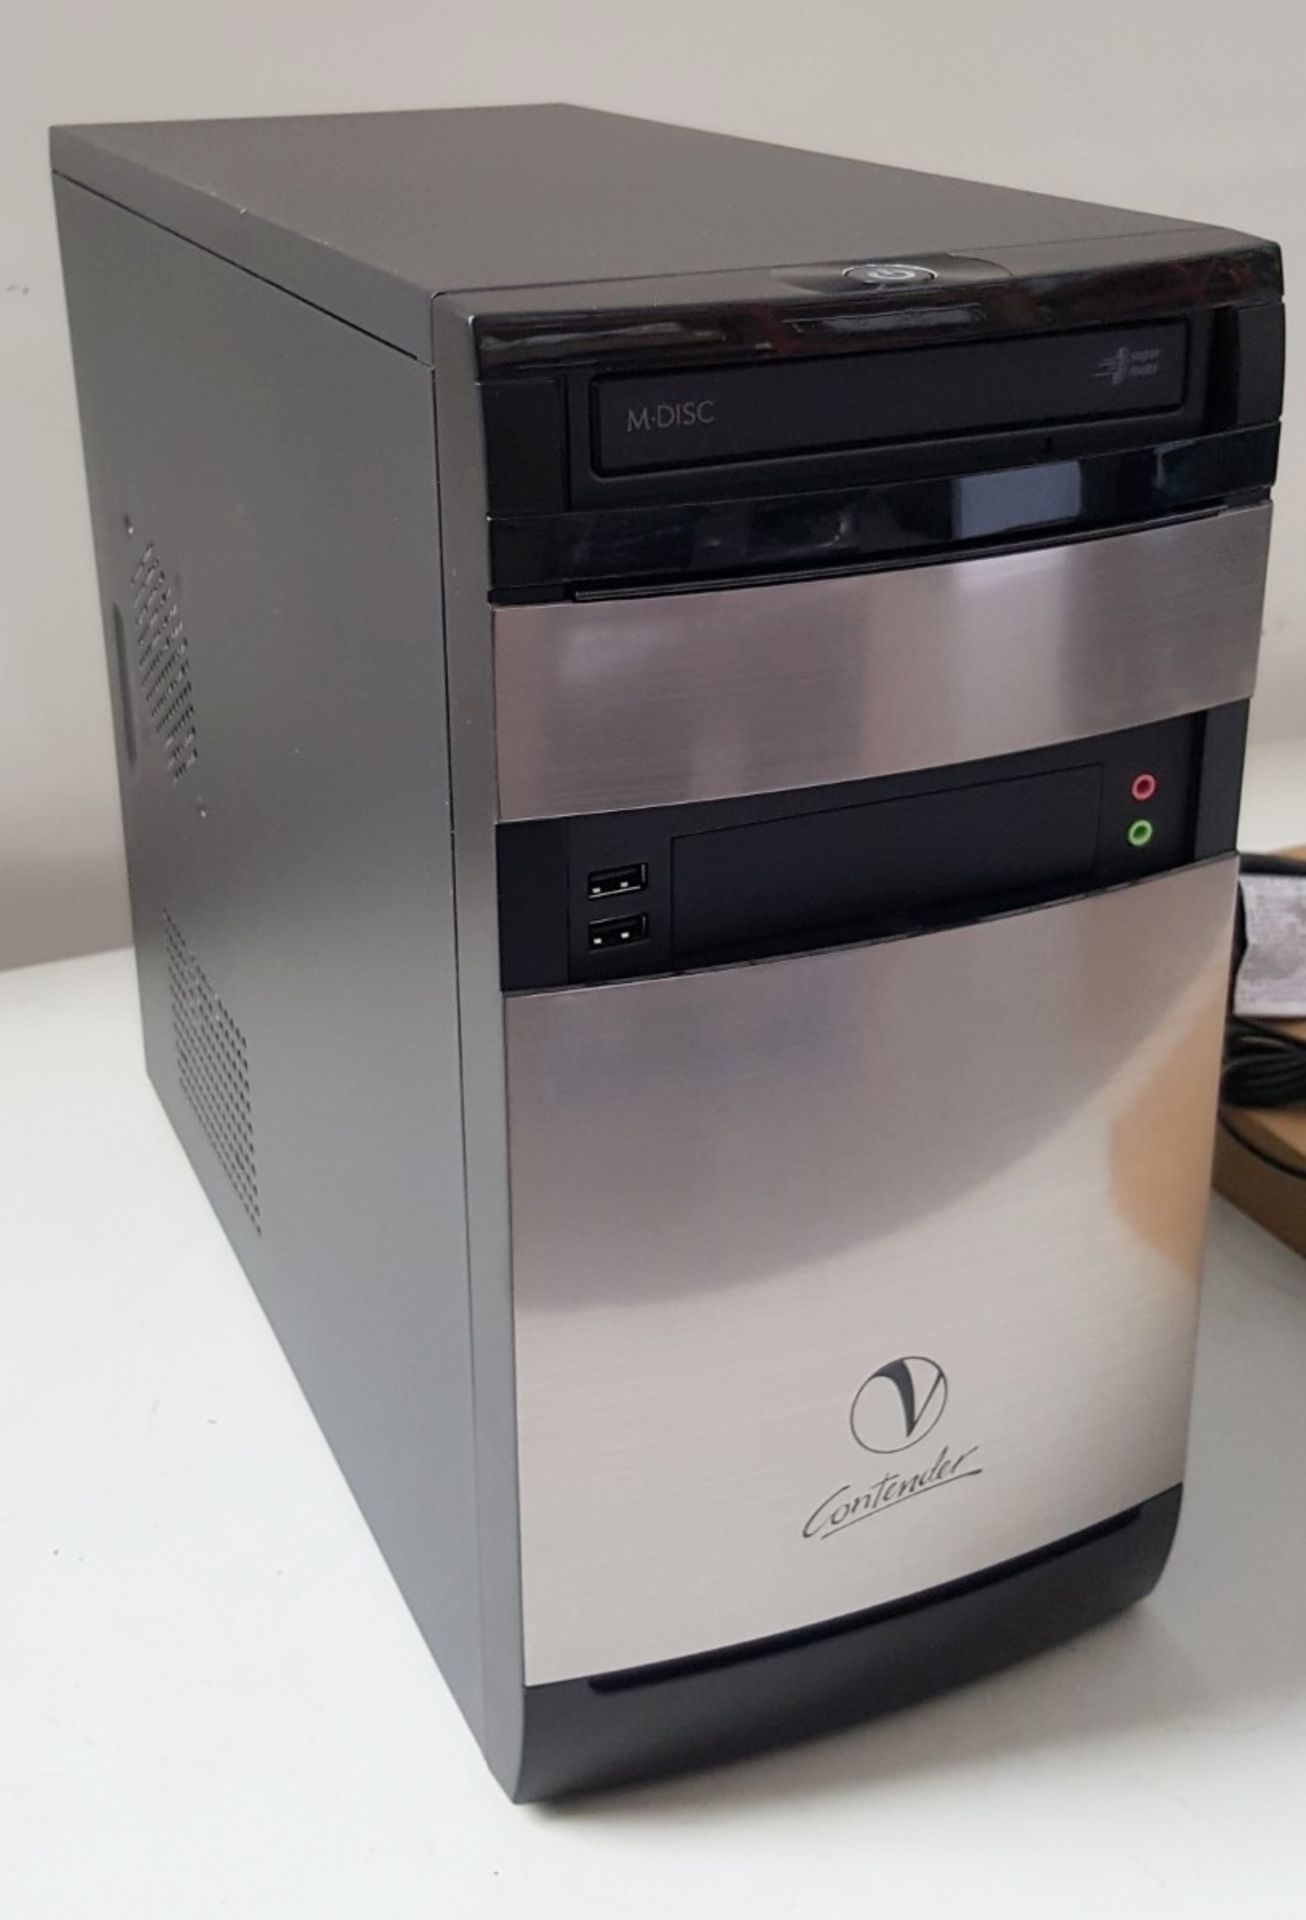 1 x New In Box Viglen Contender Desktop PC - Ref LD421 - Image 6 of 9